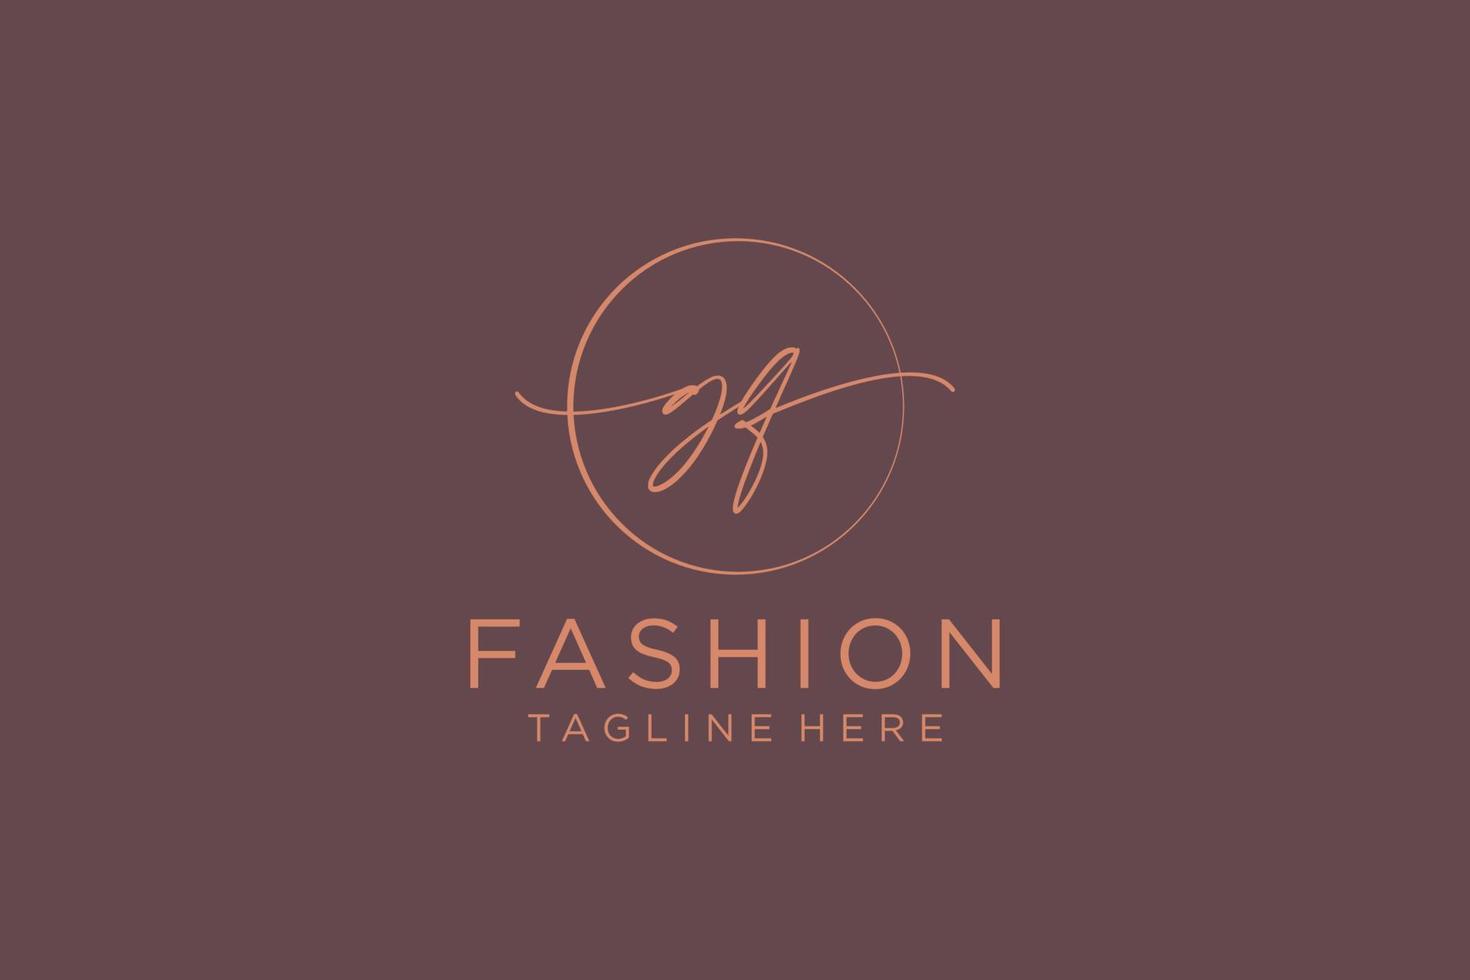 ursprüngliches gq feminines logo schönheitsmonogramm und elegantes logodesign, handschriftlogo der ersten unterschrift, hochzeit, mode, blumen und botanik mit kreativer vorlage. vektor